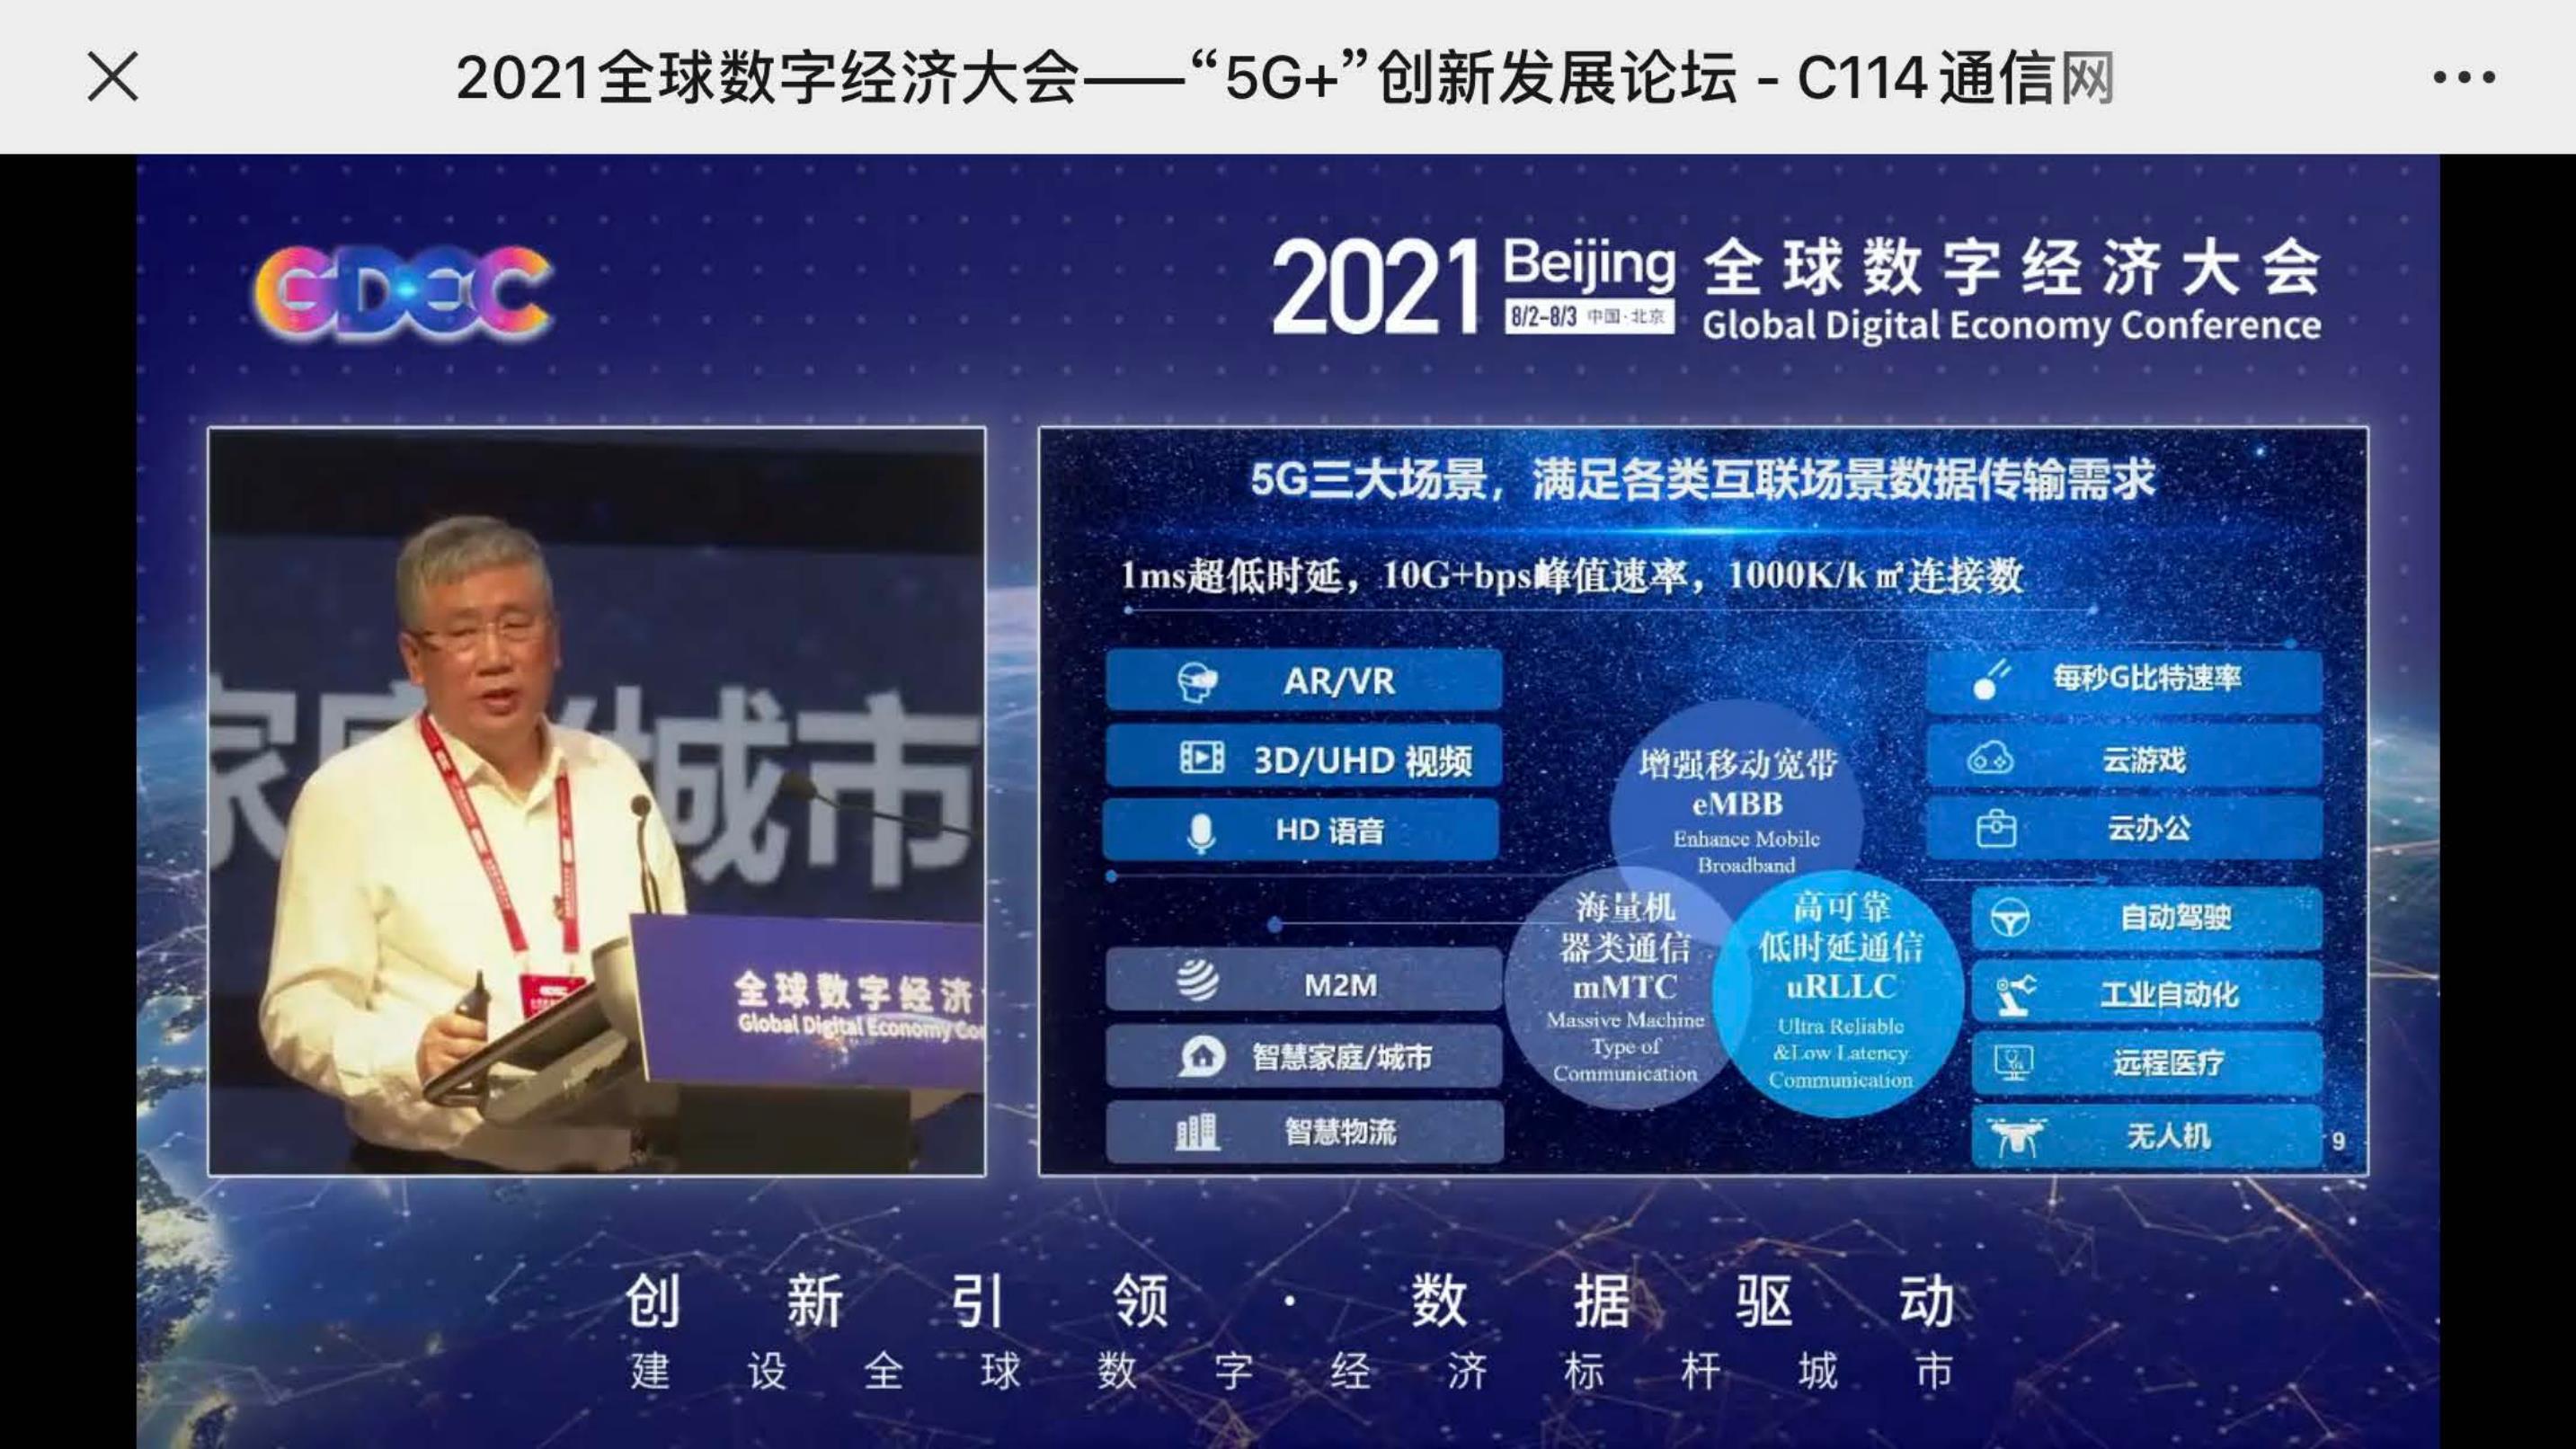 中国数字经济前沿（2021）